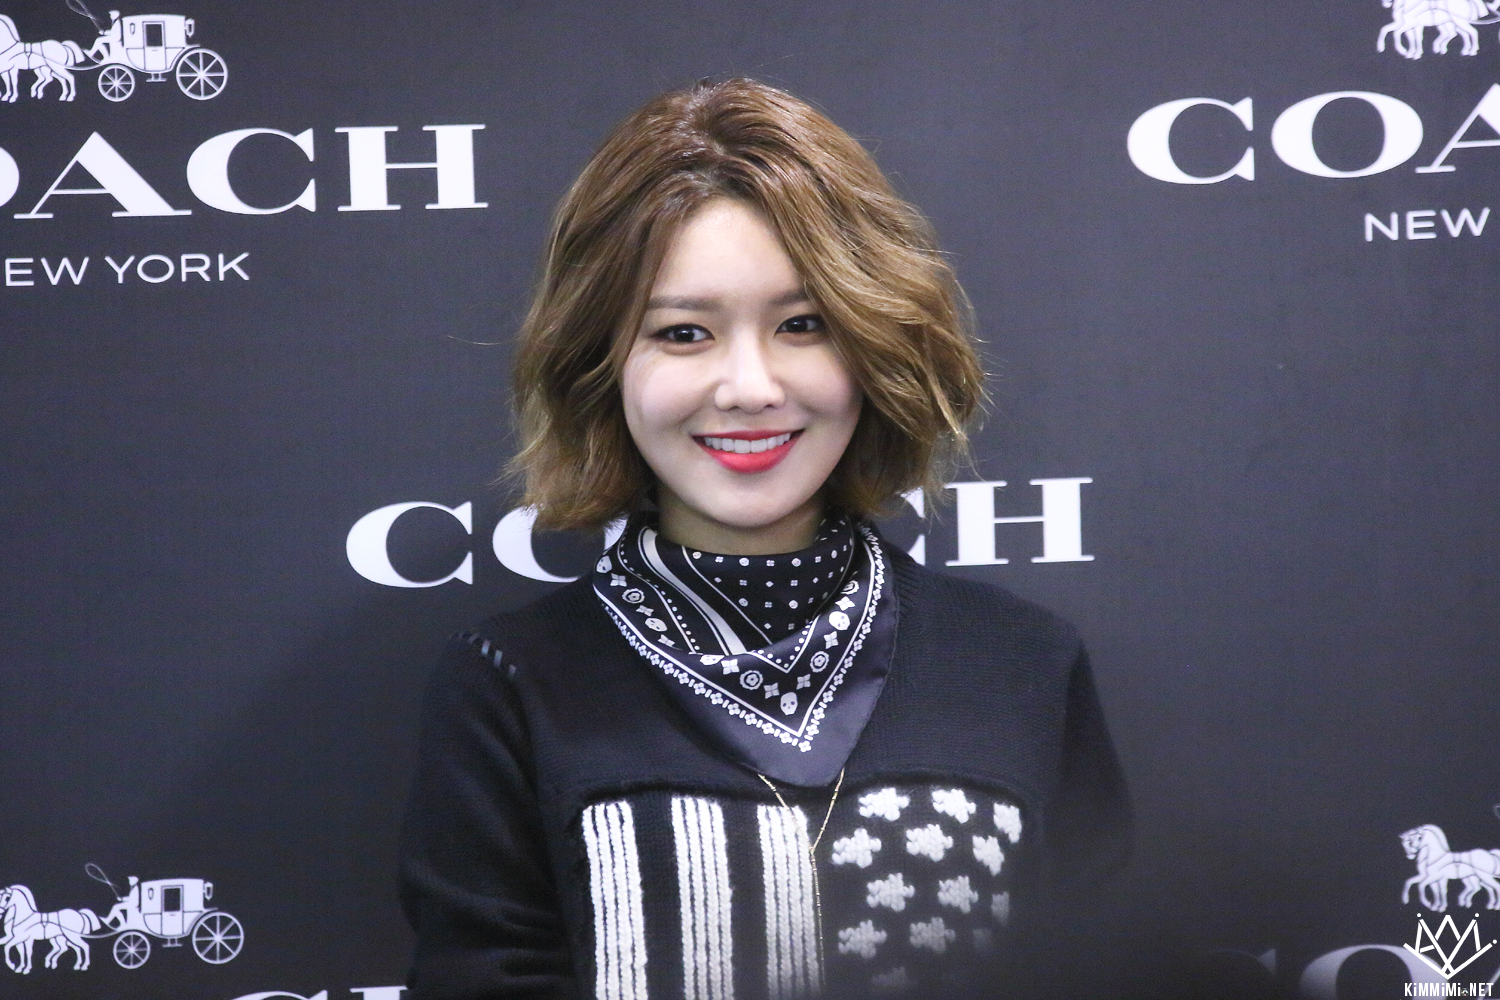  [PIC][27-11-2015]SooYoung tham dự buổi Fansign cho thương hiệu "COACH" tại Lotte Department Store Busan vào trưa nay - Page 2 2520684356BB251E1BE99E